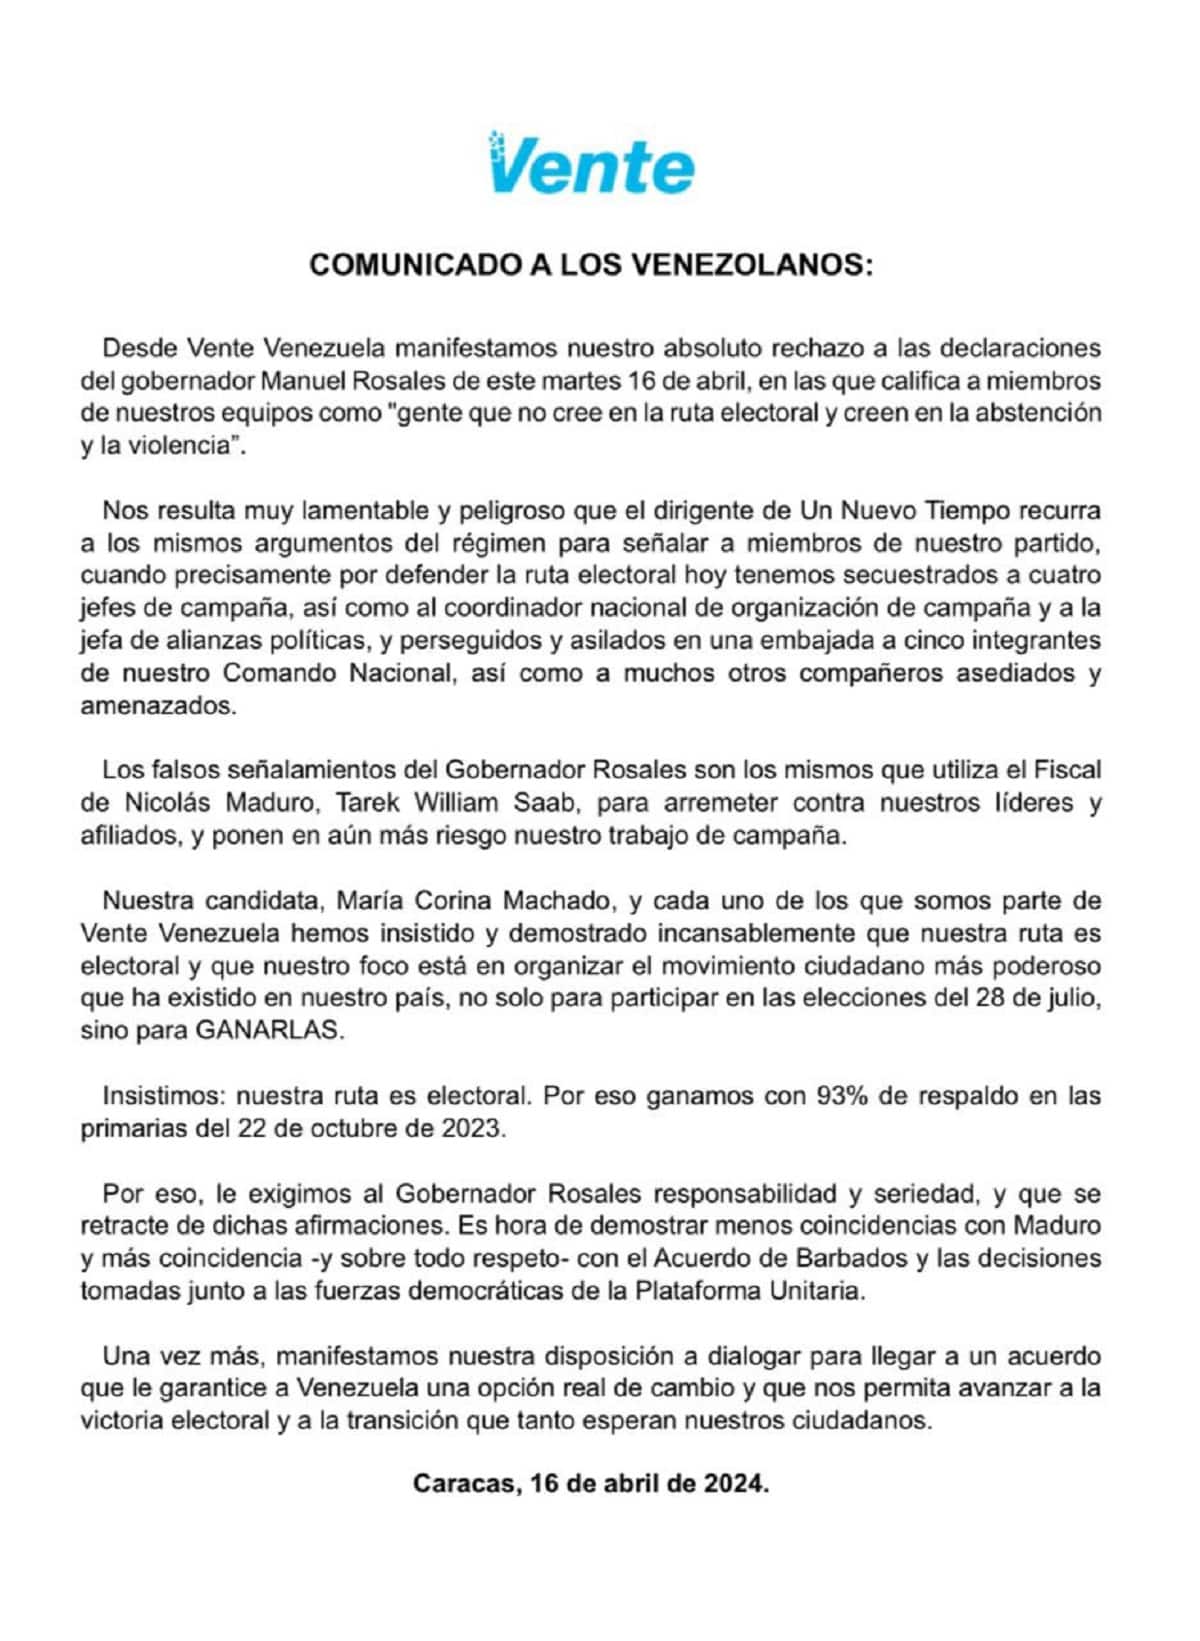 Vente Venezuela rechazó declaraciones de Rosales sobre "abstención" y "violencia": UNT afirma que se sacaron de contexto